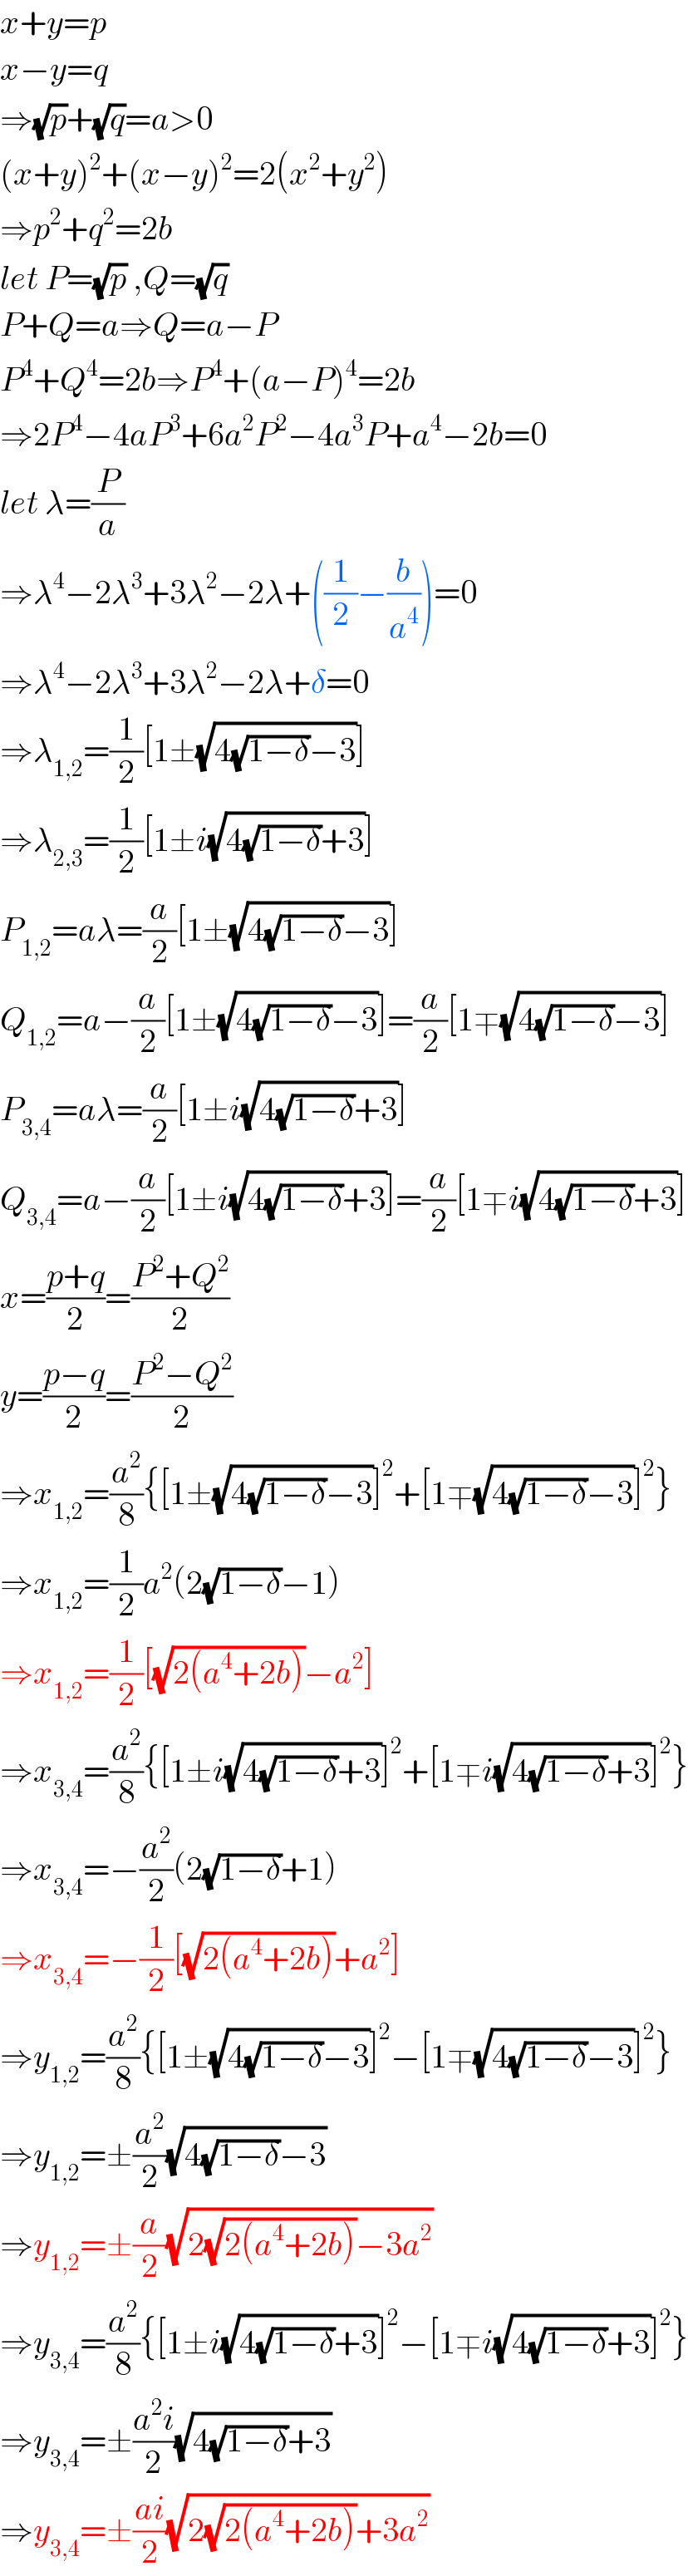 x+y=p  x−y=q  ⇒(√p)+(√q)=a>0  (x+y)^2 +(x−y)^2 =2(x^2 +y^2 )  ⇒p^2 +q^2 =2b  let P=(√p) ,Q=(√q)  P+Q=a⇒Q=a−P  P^4 +Q^4 =2b⇒P^4 +(a−P)^4 =2b  ⇒2P^4 −4aP^3 +6a^2 P^2 −4a^3 P+a^4 −2b=0  let λ=(P/a)  ⇒λ^4 −2λ^3 +3λ^2 −2λ+((1/2)−(b/a^4 ))=0  ⇒λ^4 −2λ^3 +3λ^2 −2λ+δ=0  ⇒λ_(1,2) =(1/2)[1±(√(4(√(1−δ))−3))]  ⇒λ_(2,3) =(1/2)[1±i(√(4(√(1−δ))+3))]  P_(1,2) =aλ=(a/2)[1±(√(4(√(1−δ))−3))]  Q_(1,2) =a−(a/2)[1±(√(4(√(1−δ))−3))]=(a/2)[1∓(√(4(√(1−δ))−3))]  P_(3,4) =aλ=(a/2)[1±i(√(4(√(1−δ))+3))]  Q_(3,4) =a−(a/2)[1±i(√(4(√(1−δ))+3))]=(a/2)[1∓i(√(4(√(1−δ))+3))]  x=((p+q)/2)=((P^2 +Q^2 )/2)  y=((p−q)/2)=((P^2 −Q^2 )/2)  ⇒x_(1,2) =(a^2 /8){[1±(√(4(√(1−δ))−3))]^2 +[1∓(√(4(√(1−δ))−3))]^2 }  ⇒x_(1,2) =(1/2)a^2 (2(√(1−δ))−1)  ⇒x_(1,2) =(1/2)[(√(2(a^4 +2b)))−a^2 ]  ⇒x_(3,4) =(a^2 /8){[1±i(√(4(√(1−δ))+3))]^2 +[1∓i(√(4(√(1−δ))+3))]^2 }  ⇒x_(3,4) =−(a^2 /2)(2(√(1−δ))+1)  ⇒x_(3,4) =−(1/2)[(√(2(a^4 +2b)))+a^2 ]  ⇒y_(1,2) =(a^2 /8){[1±(√(4(√(1−δ))−3))]^2 −[1∓(√(4(√(1−δ))−3))]^2 }  ⇒y_(1,2) =±(a^2 /2)(√(4(√(1−δ))−3))  ⇒y_(1,2) =±(a/2)(√(2(√(2(a^4 +2b)))−3a^2 ))  ⇒y_(3,4) =(a^2 /8){[1±i(√(4(√(1−δ))+3))]^2 −[1∓i(√(4(√(1−δ))+3))]^2 }  ⇒y_(3,4) =±((a^2 i)/2)(√(4(√(1−δ))+3))  ⇒y_(3,4) =±((ai)/2)(√(2(√(2(a^4 +2b)))+3a^2 ))  